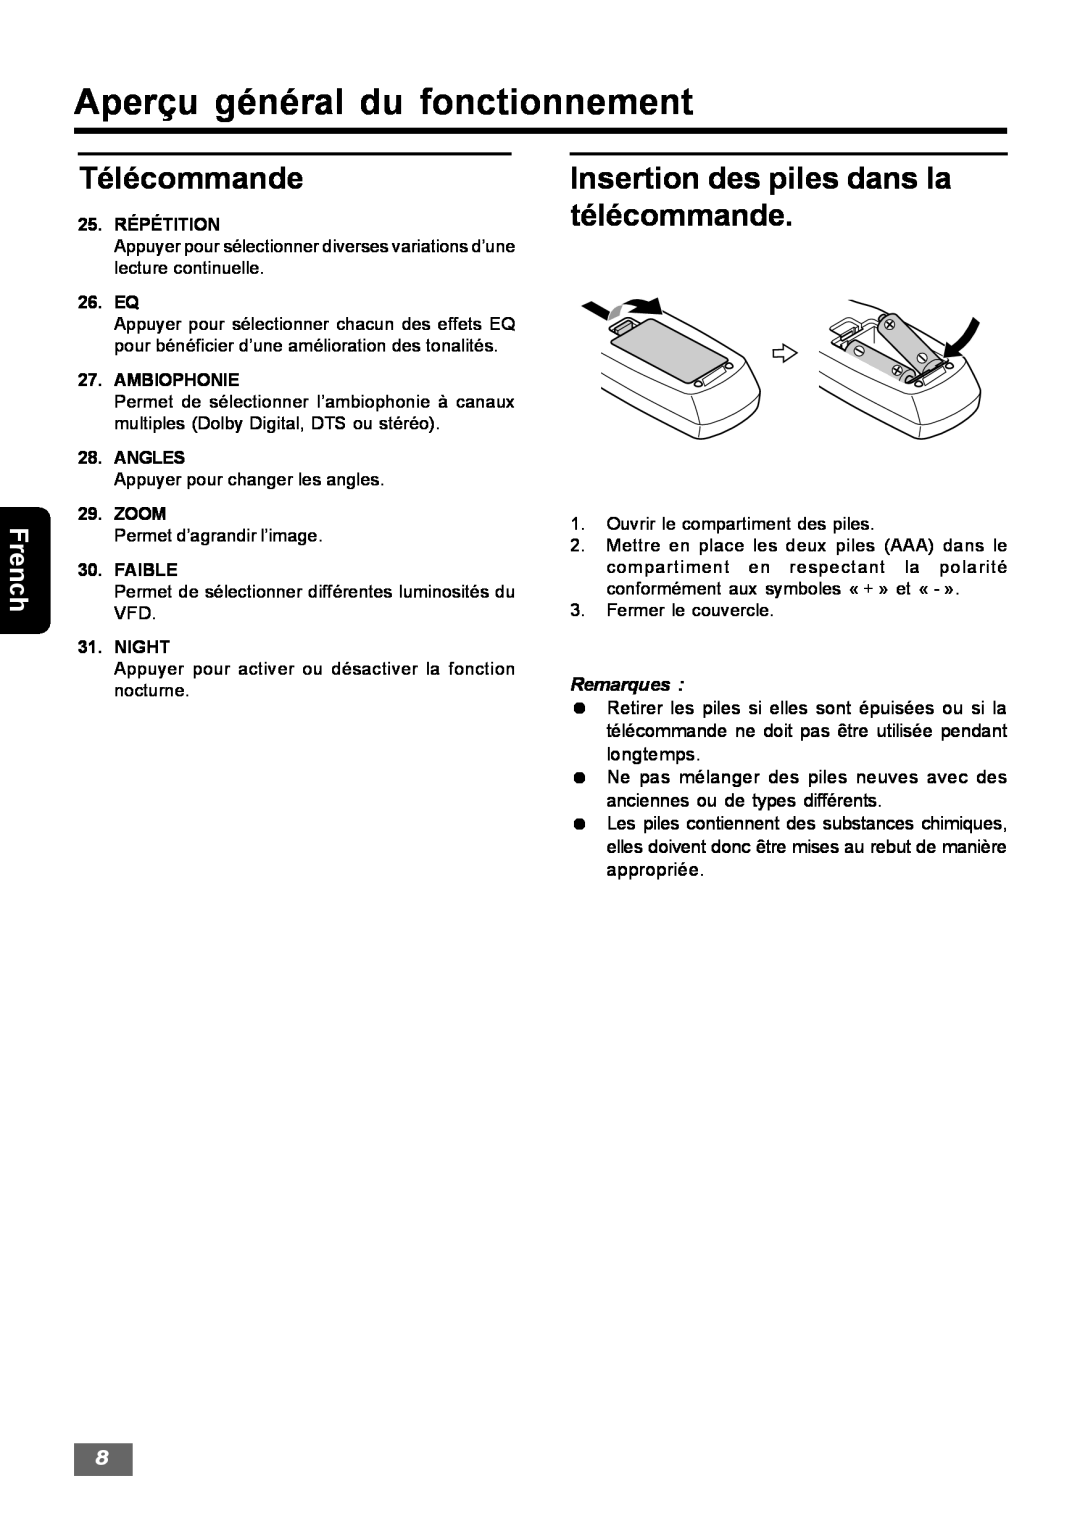 Insignia IS-HTIB102731 Insertion des piles dans la télécommande, Aperçu général du fonctionnement, Télécommande, French 